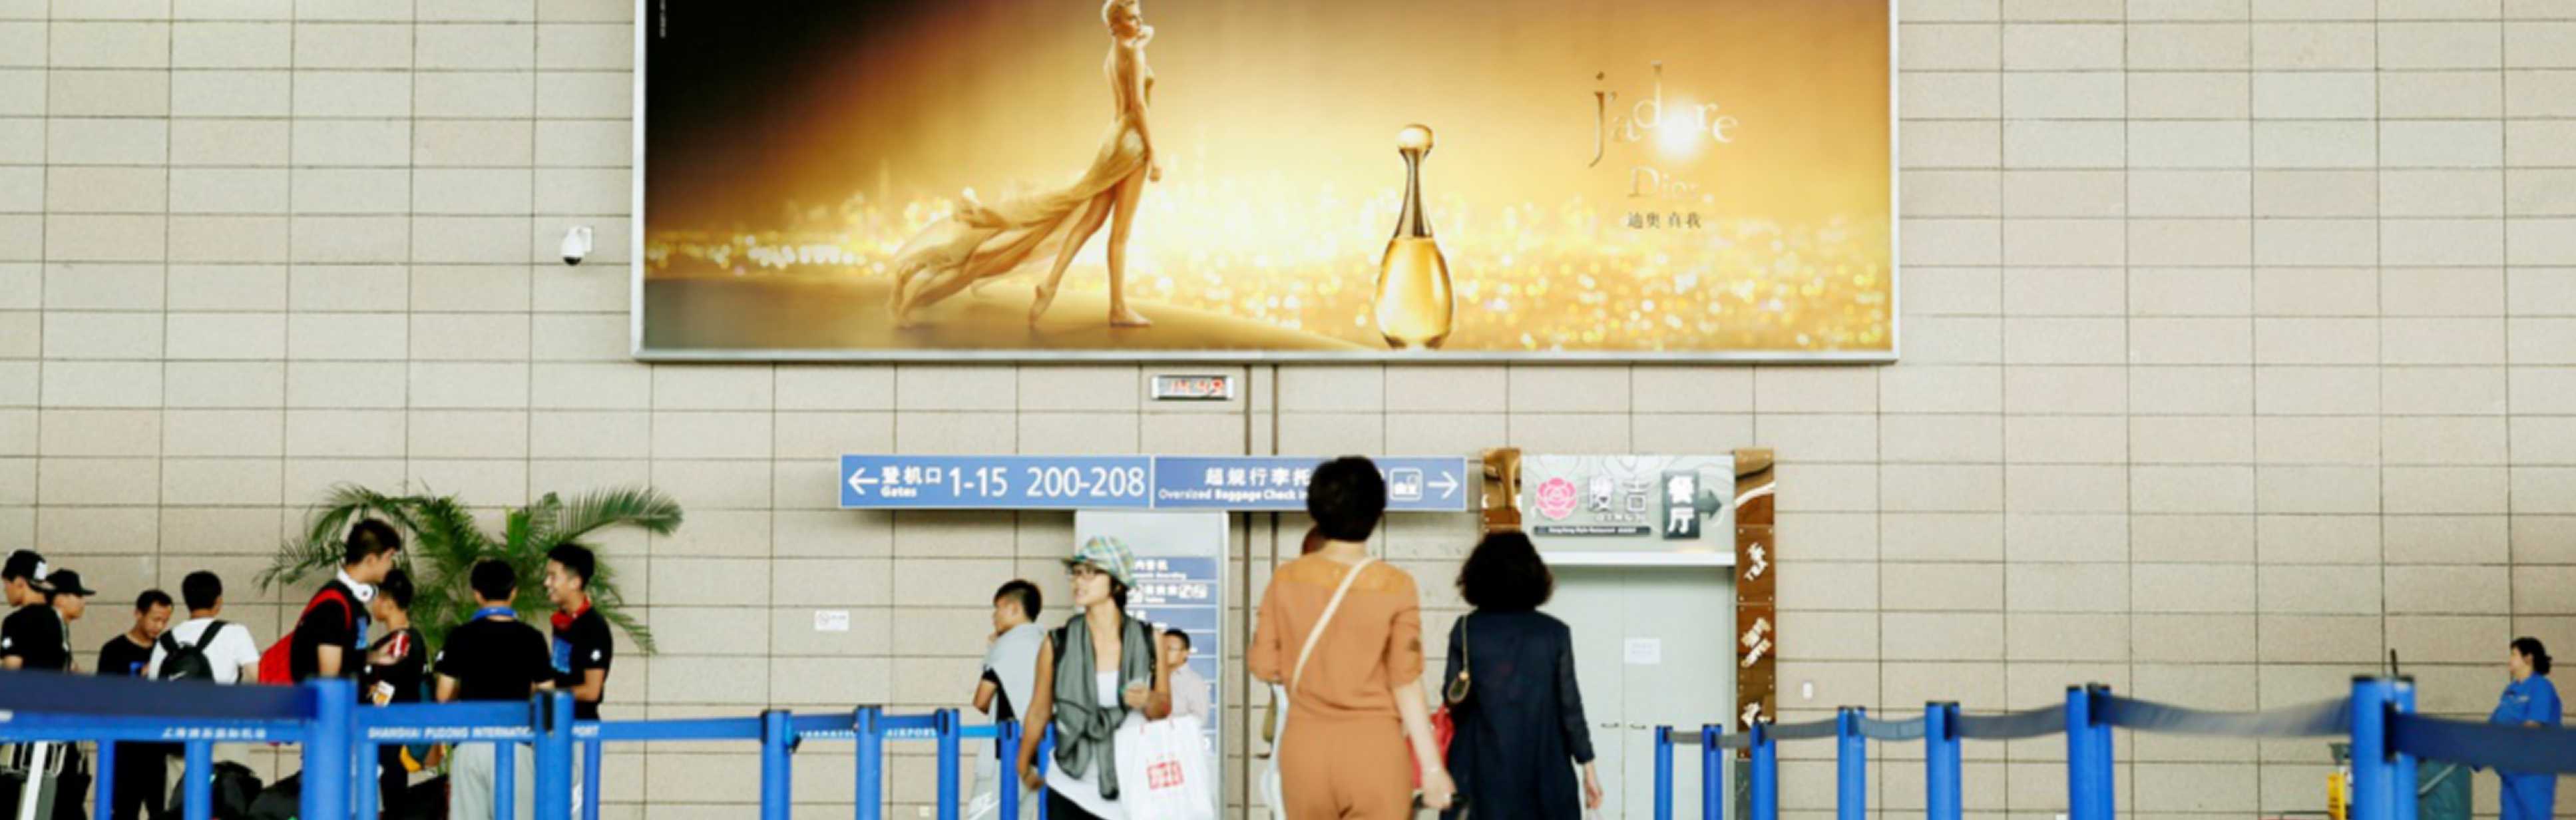 机场广告-浦东T1出发大厅巨型灯箱